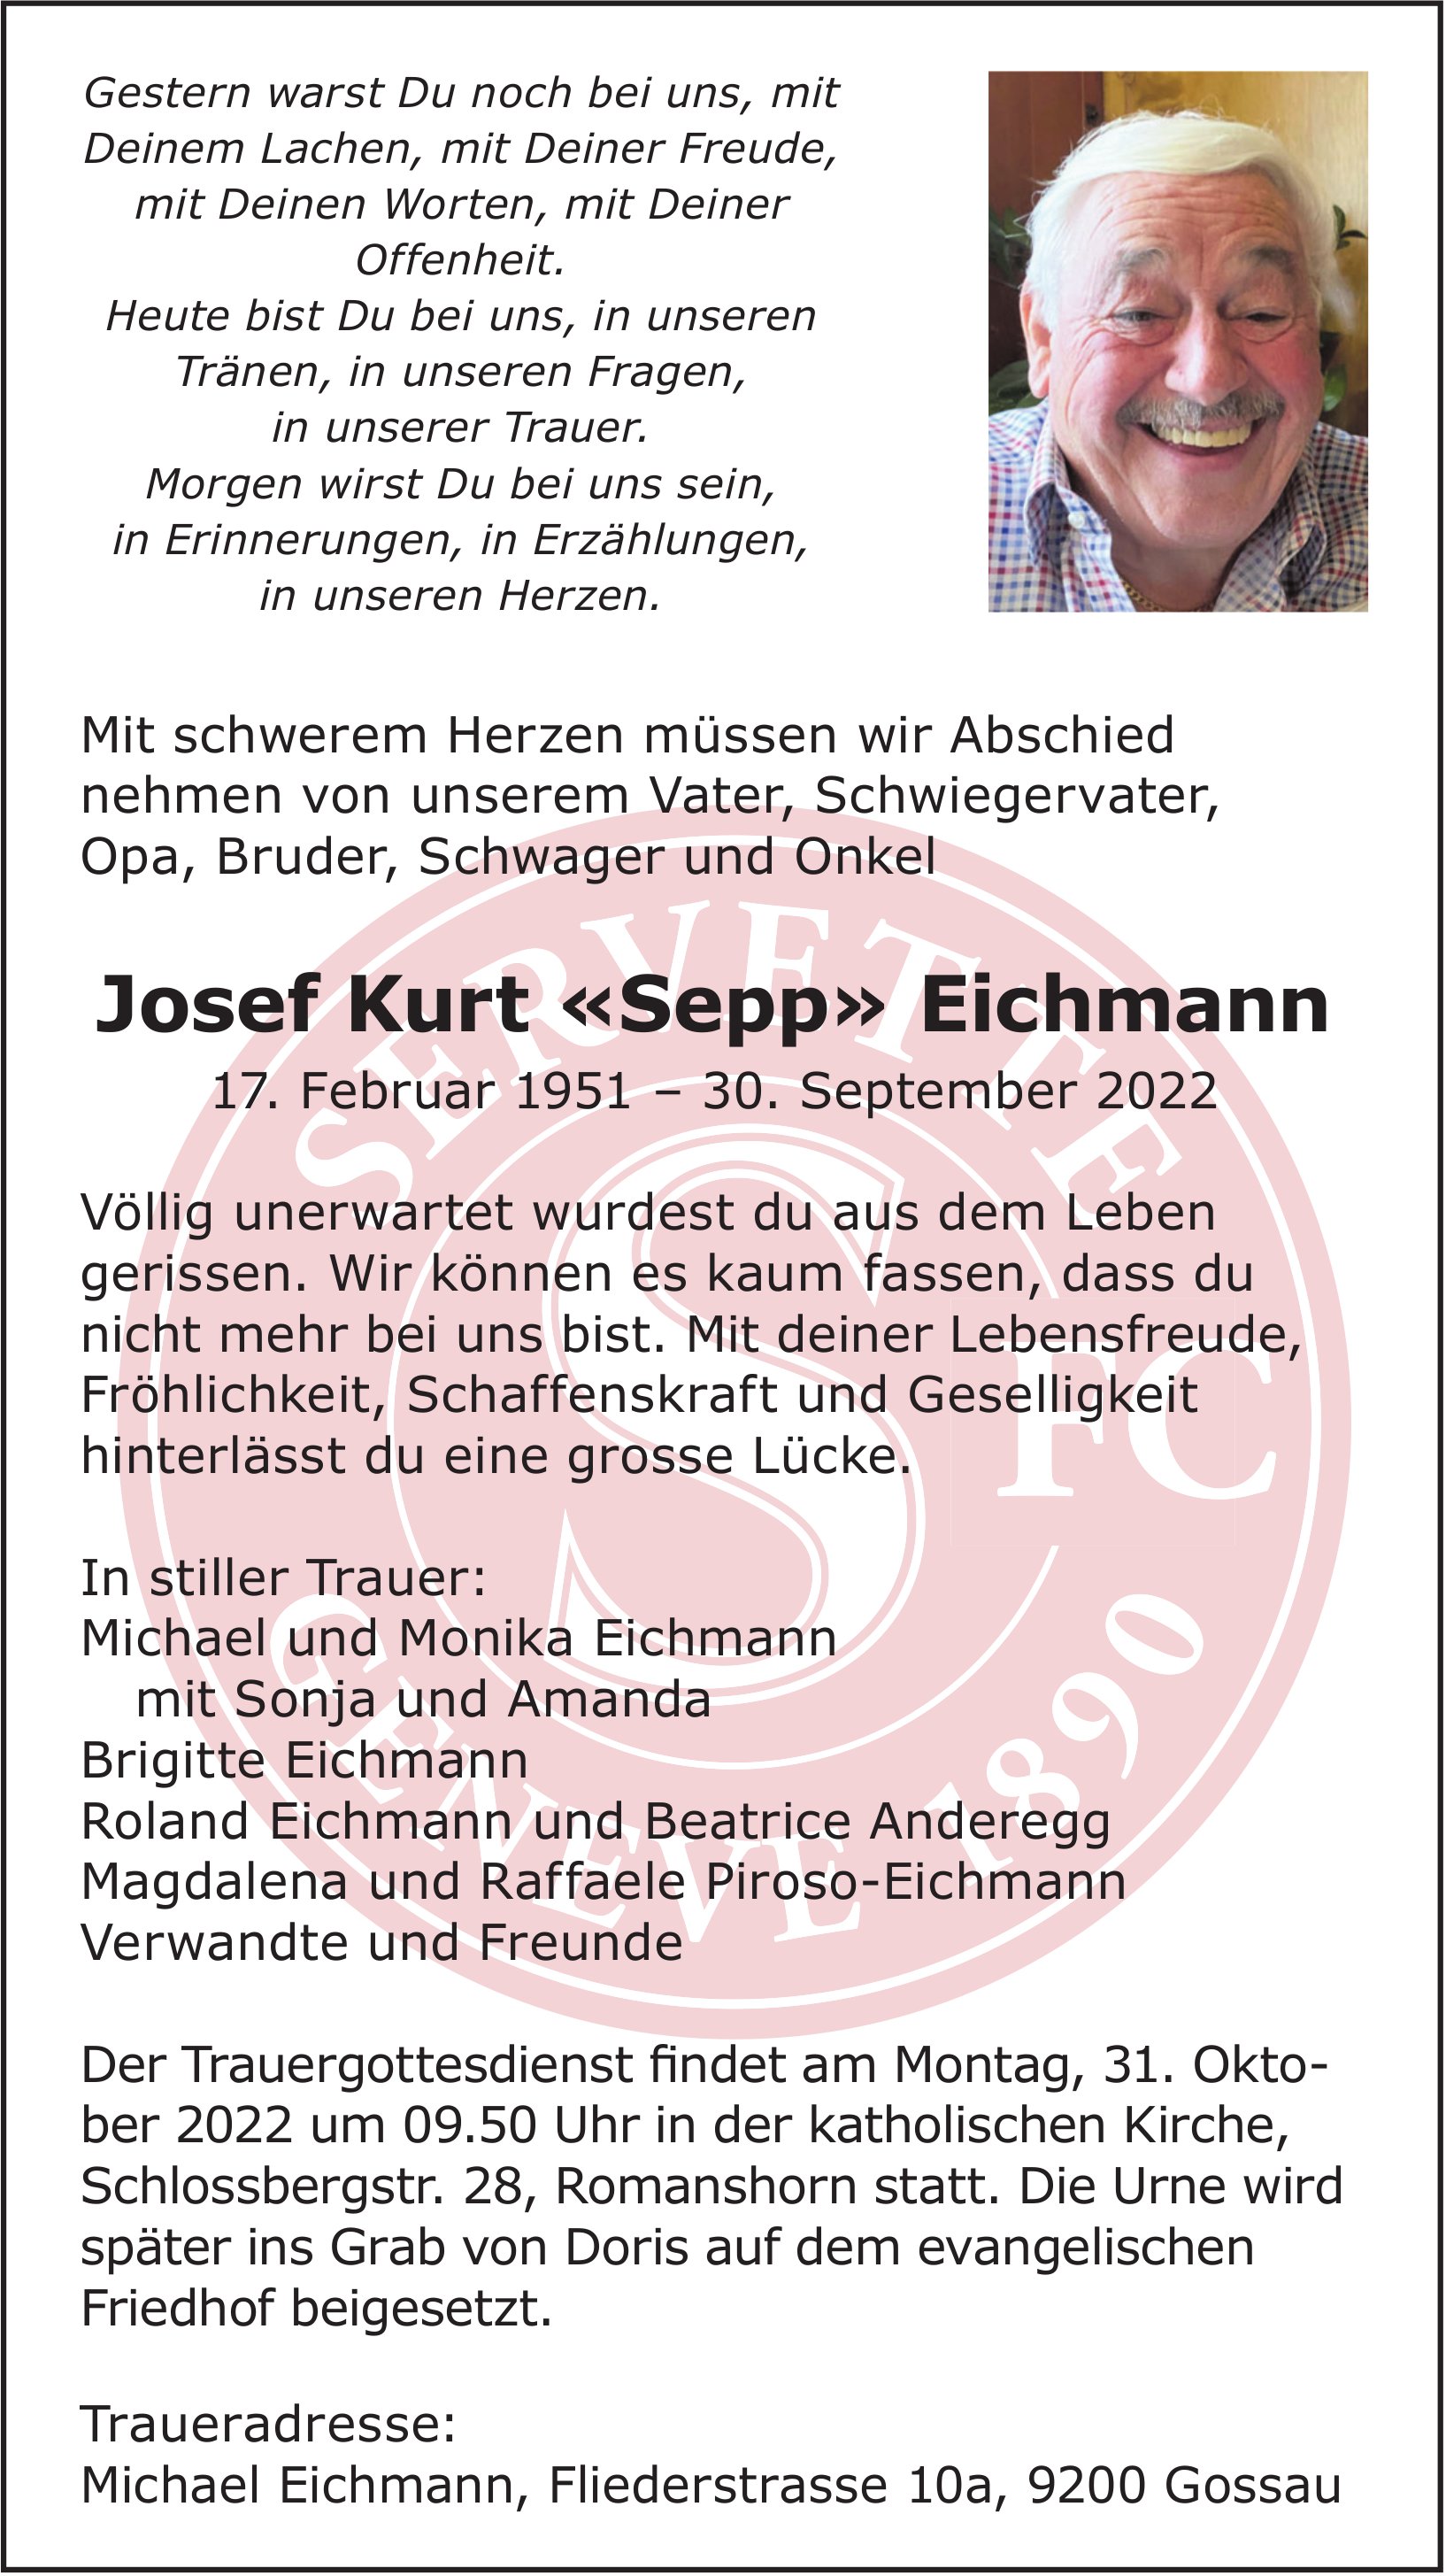 Eichmann Josef Kurt «Sepp», September 2022 / JG